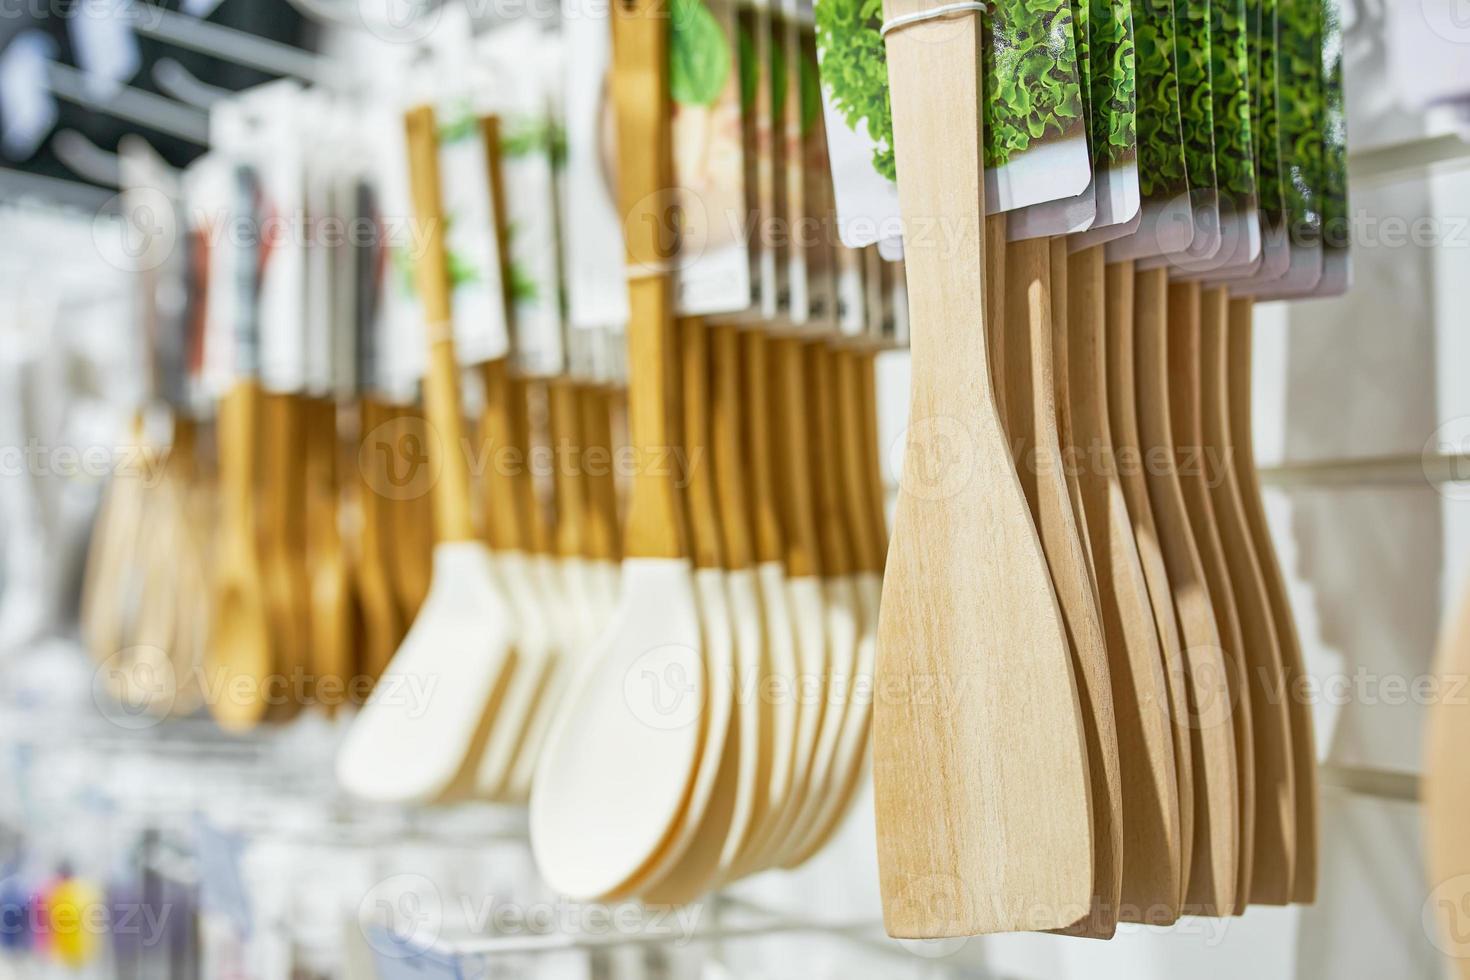 Shop window with wooden kitchen utensils. photo